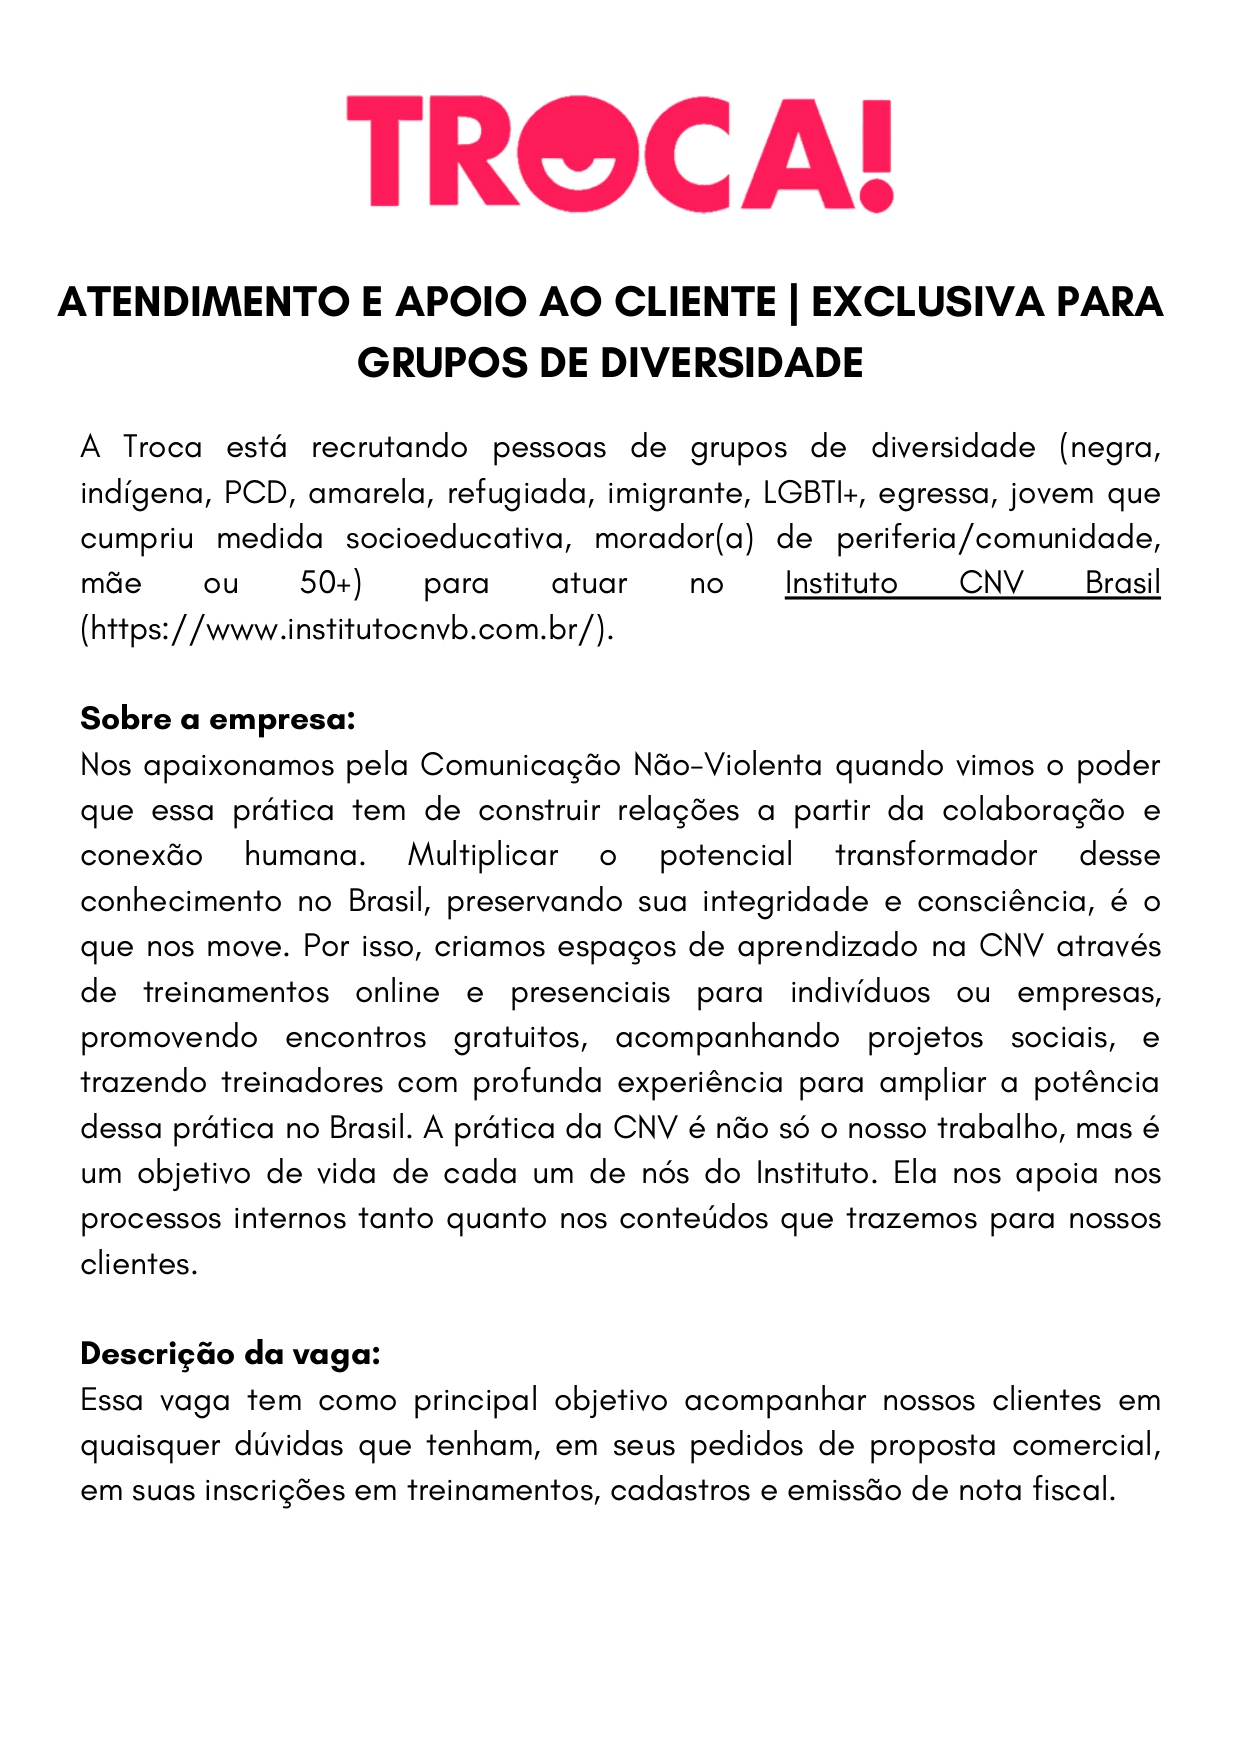 Descrição_da_vaga_Atendimento_e_apoio_ao_cliente_Instituto_CNV_Brasil_page-0001.jpg